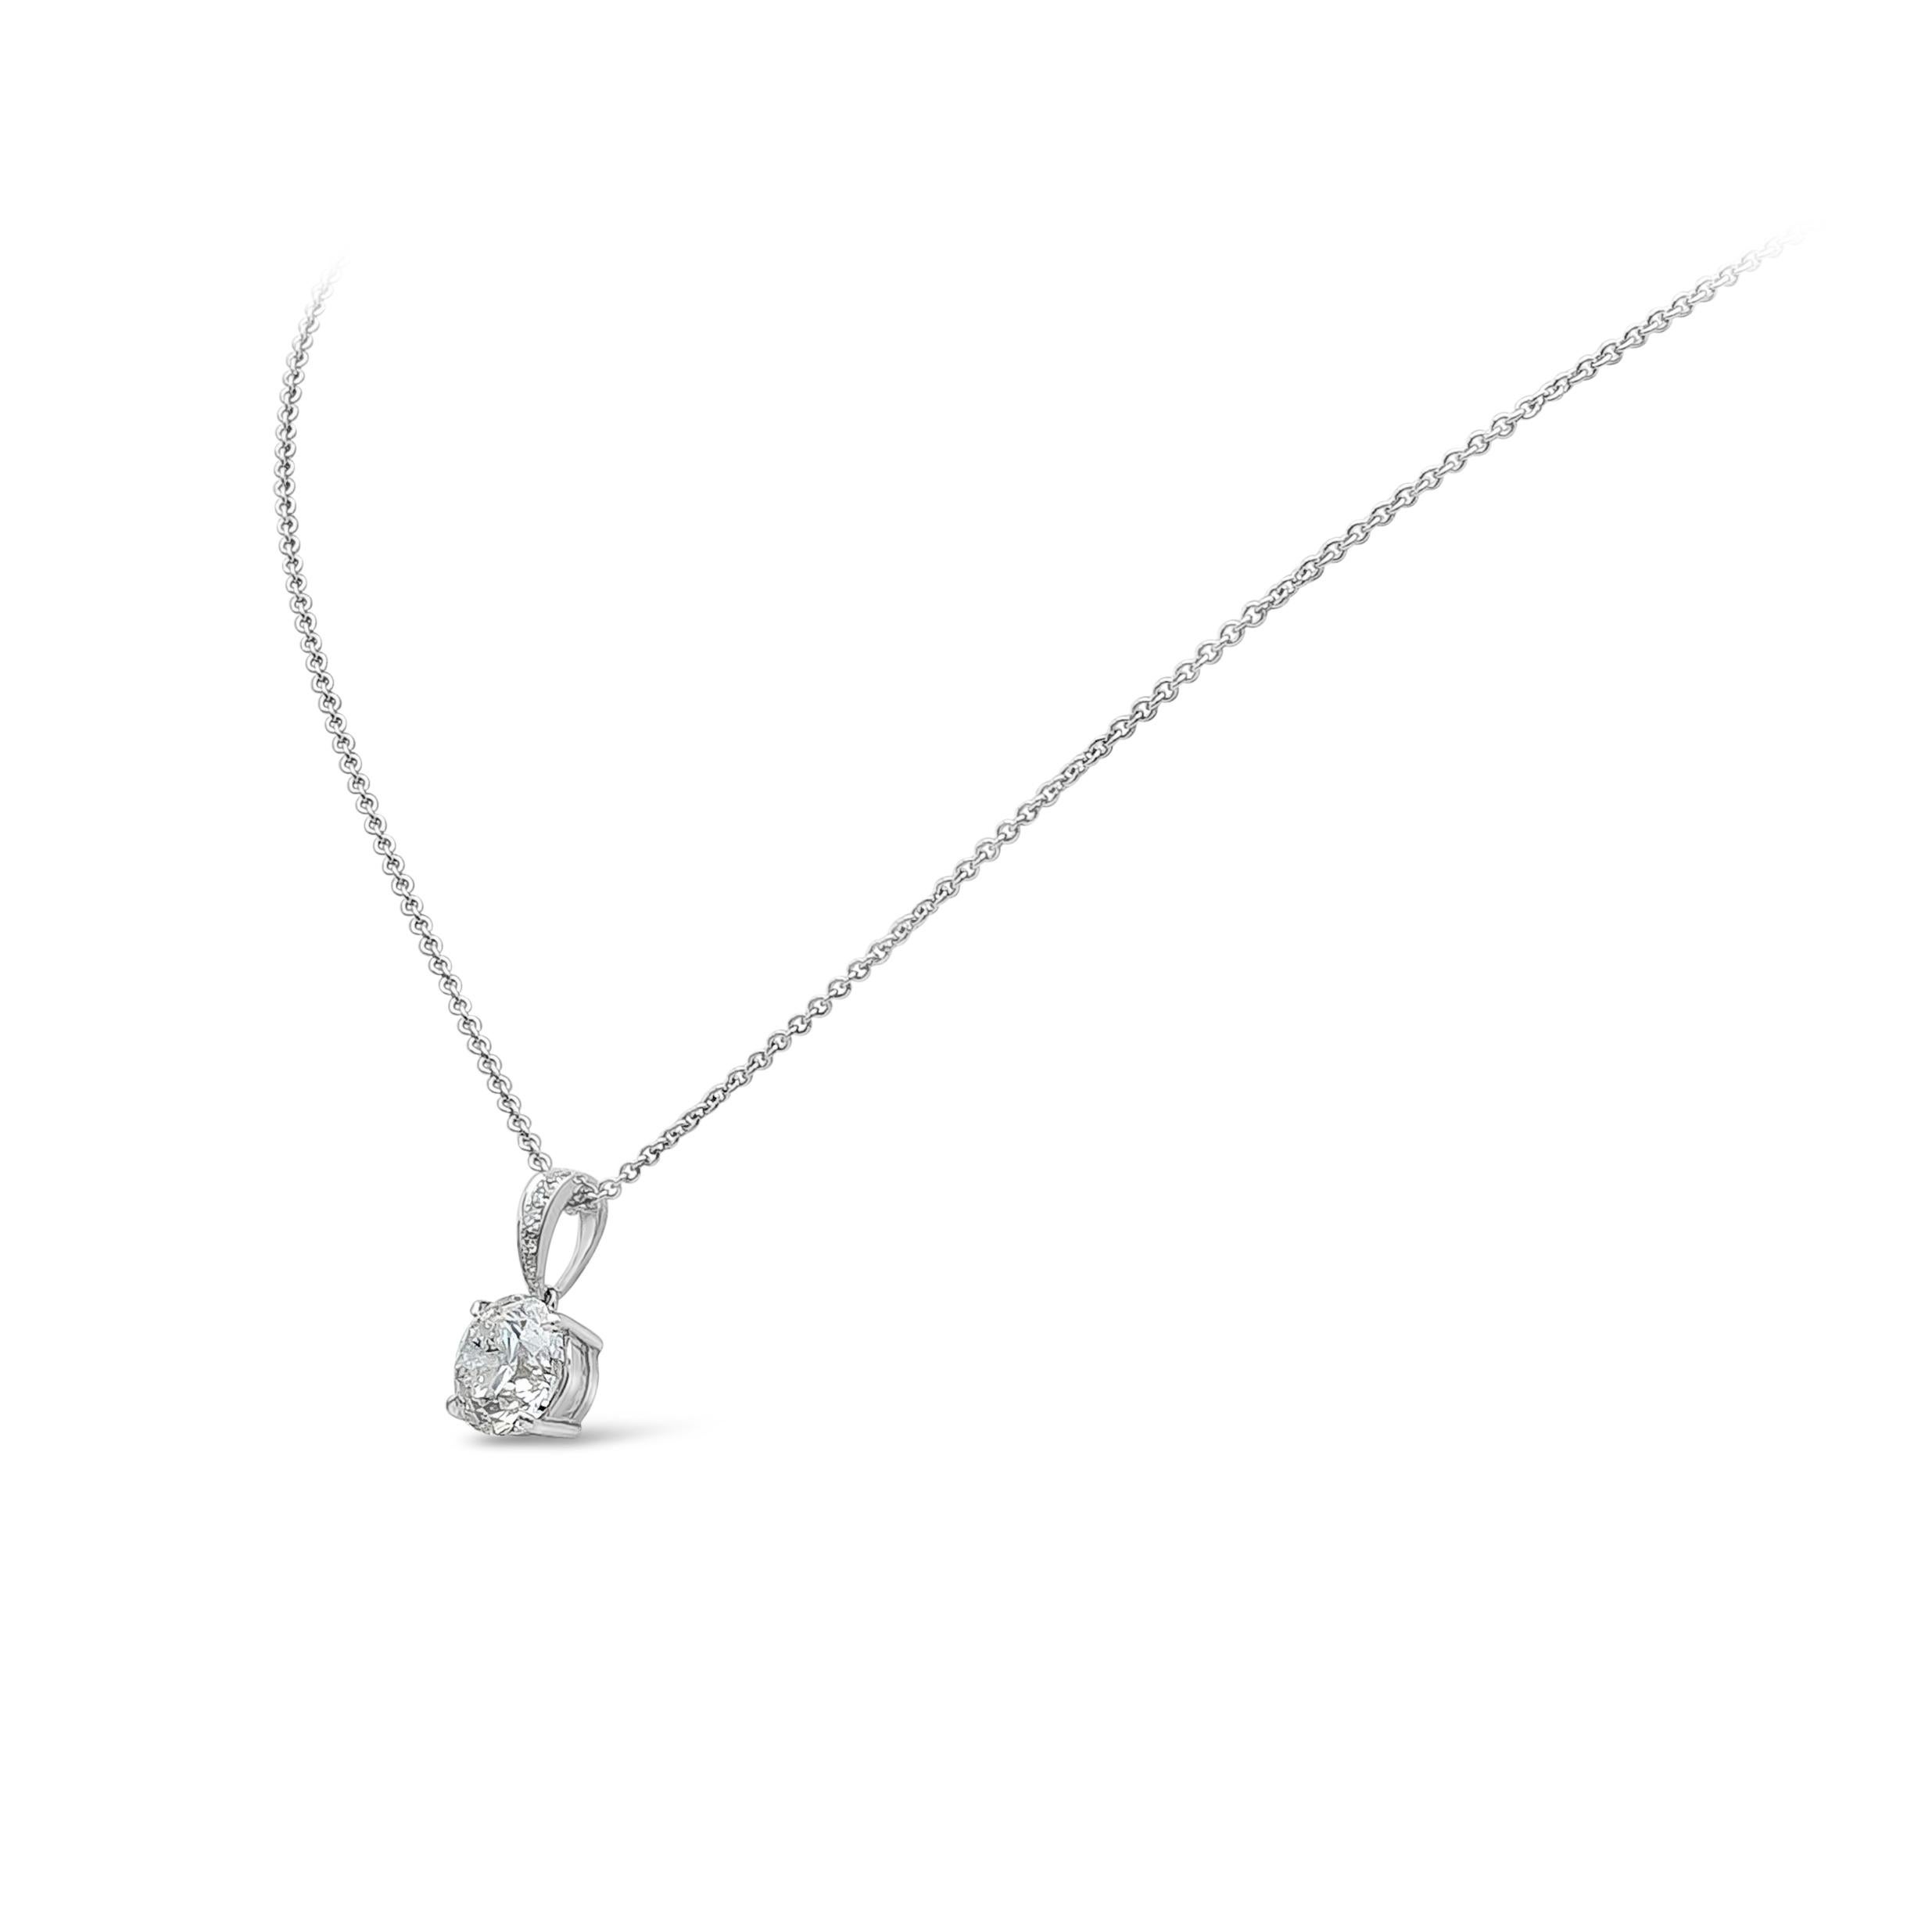 Collier pendentif solitaire classique et simple, mettant en valeur 2,27 carats de diamant rond de taille brillant certifié par EGL de couleur F et de pureté I1. Suspendu à une bague incrustée de diamants pesant 0,07 carats de couleur F et de pureté